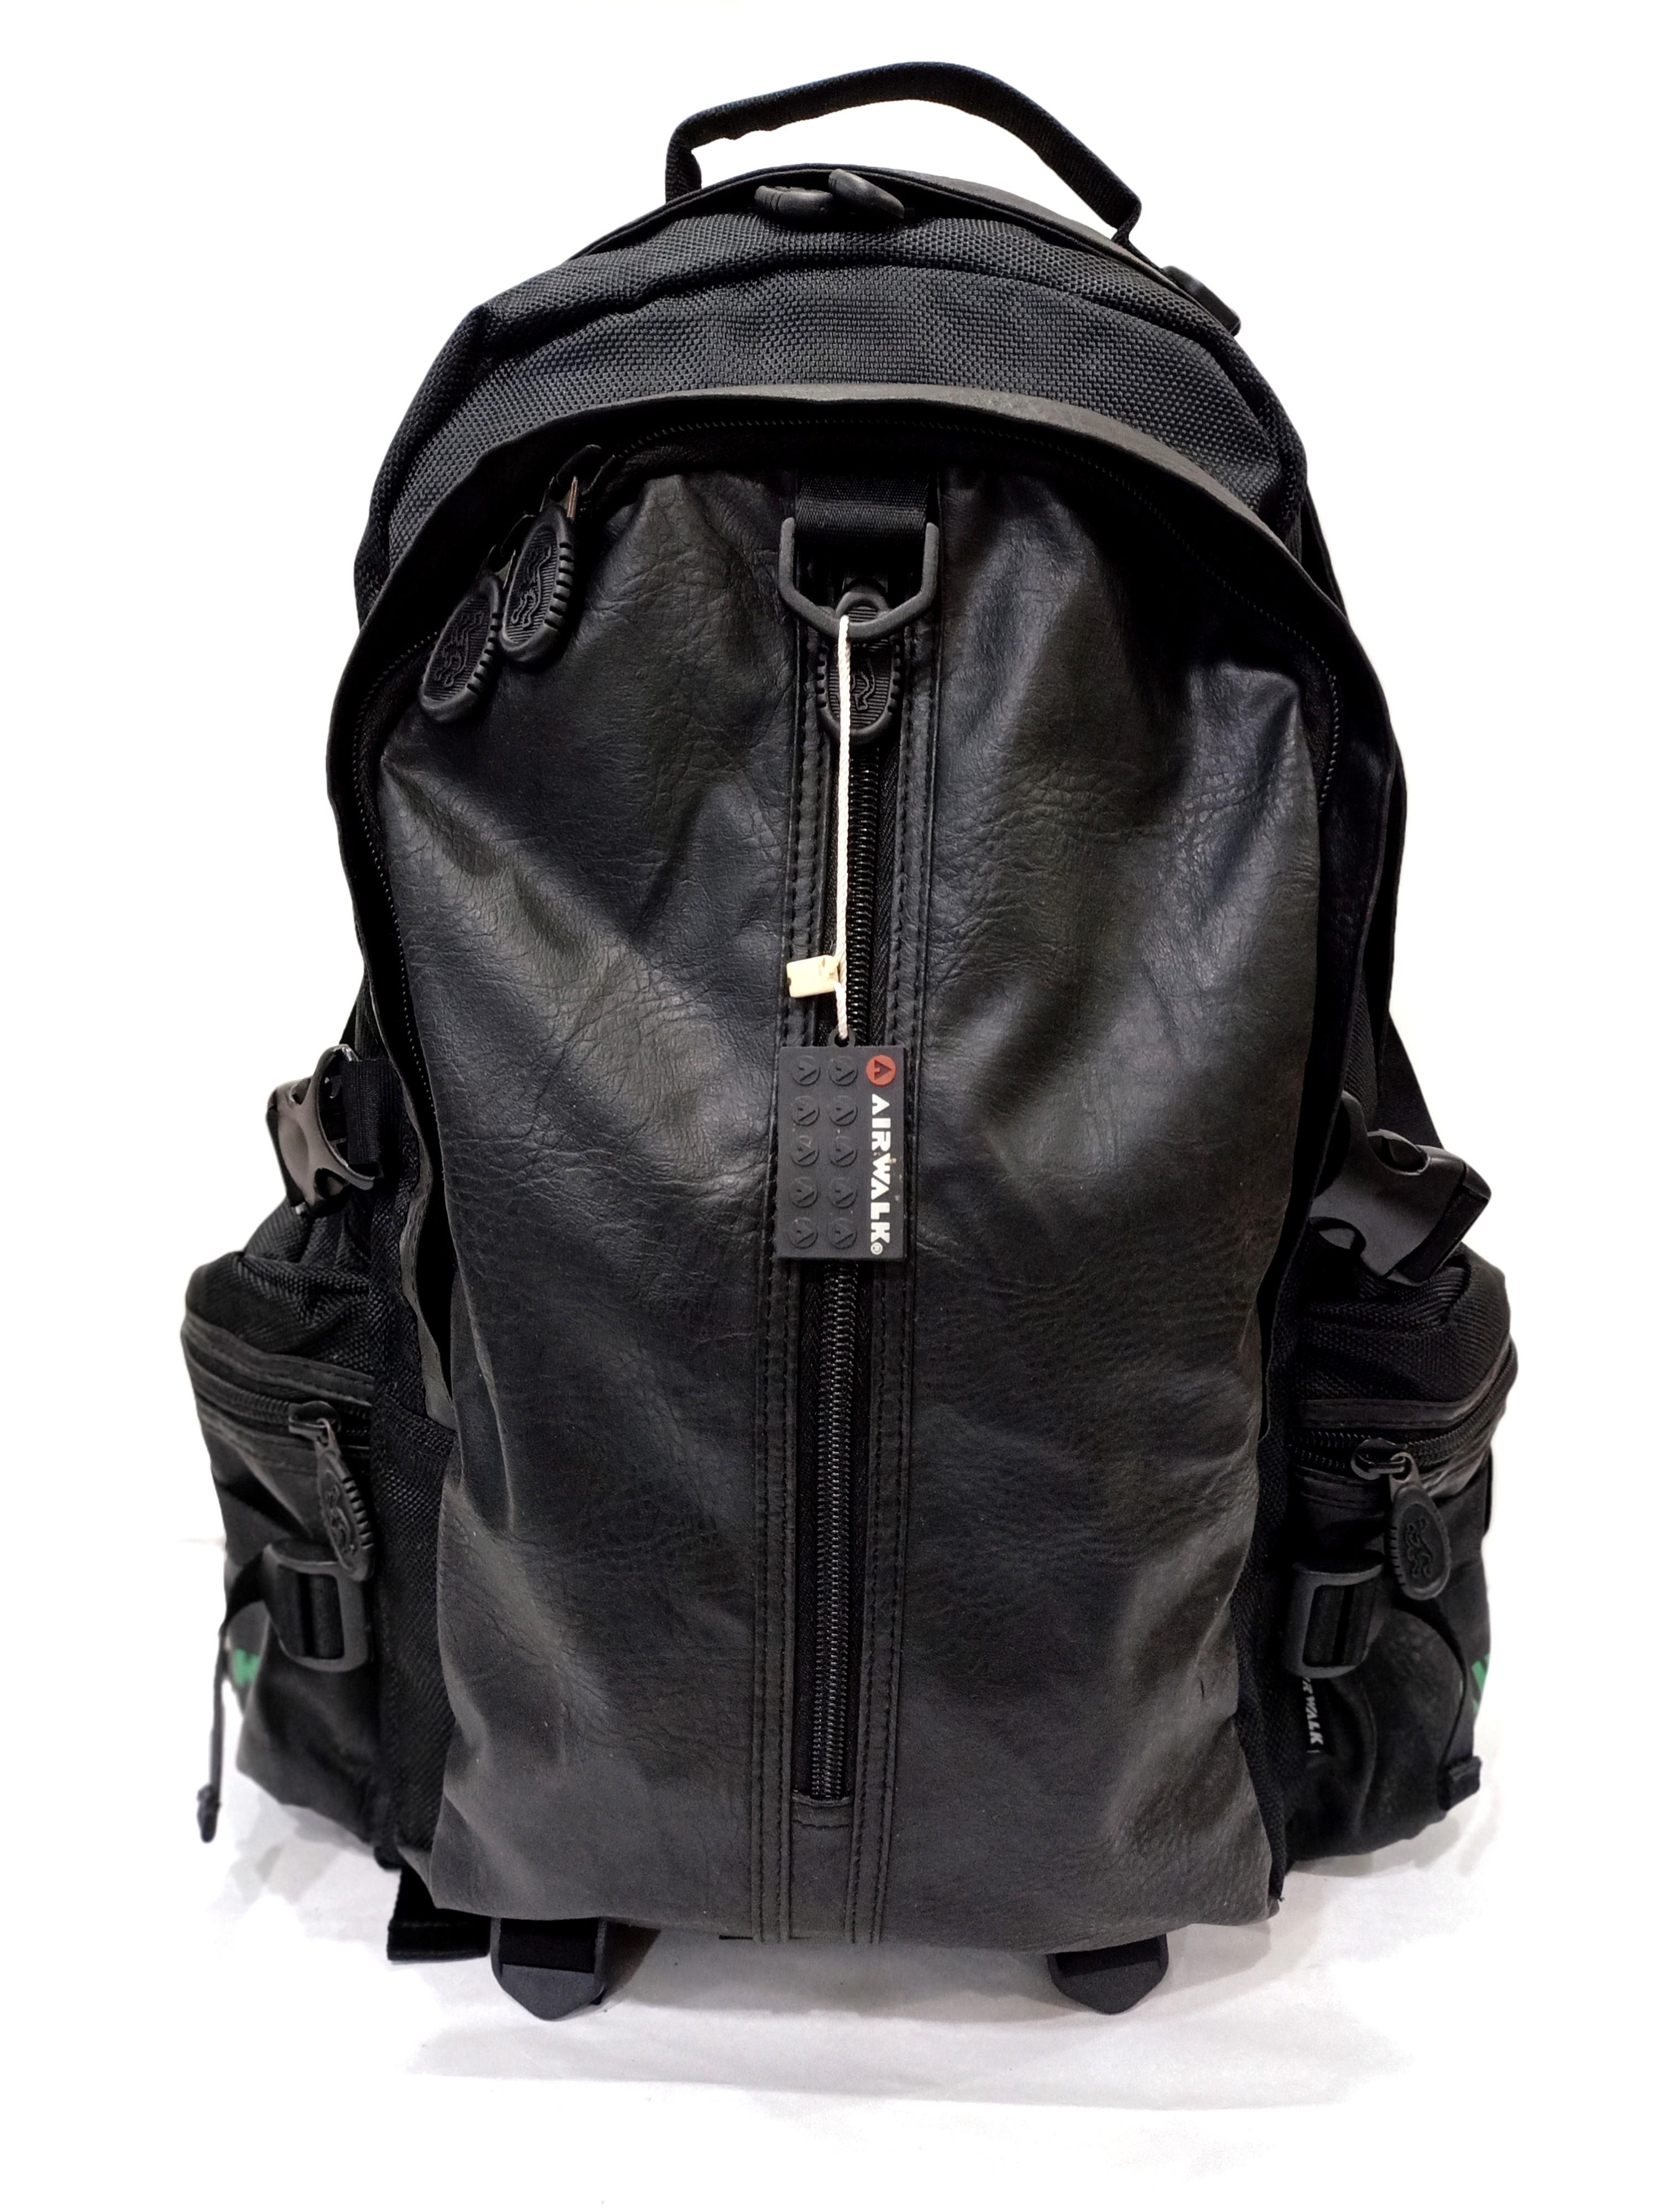 Tas Ransel Sekolah Kantor Backpack Bagpack Airwalk Black Red Bag Include  Free Raincover Gratis | Lazada Indonesia